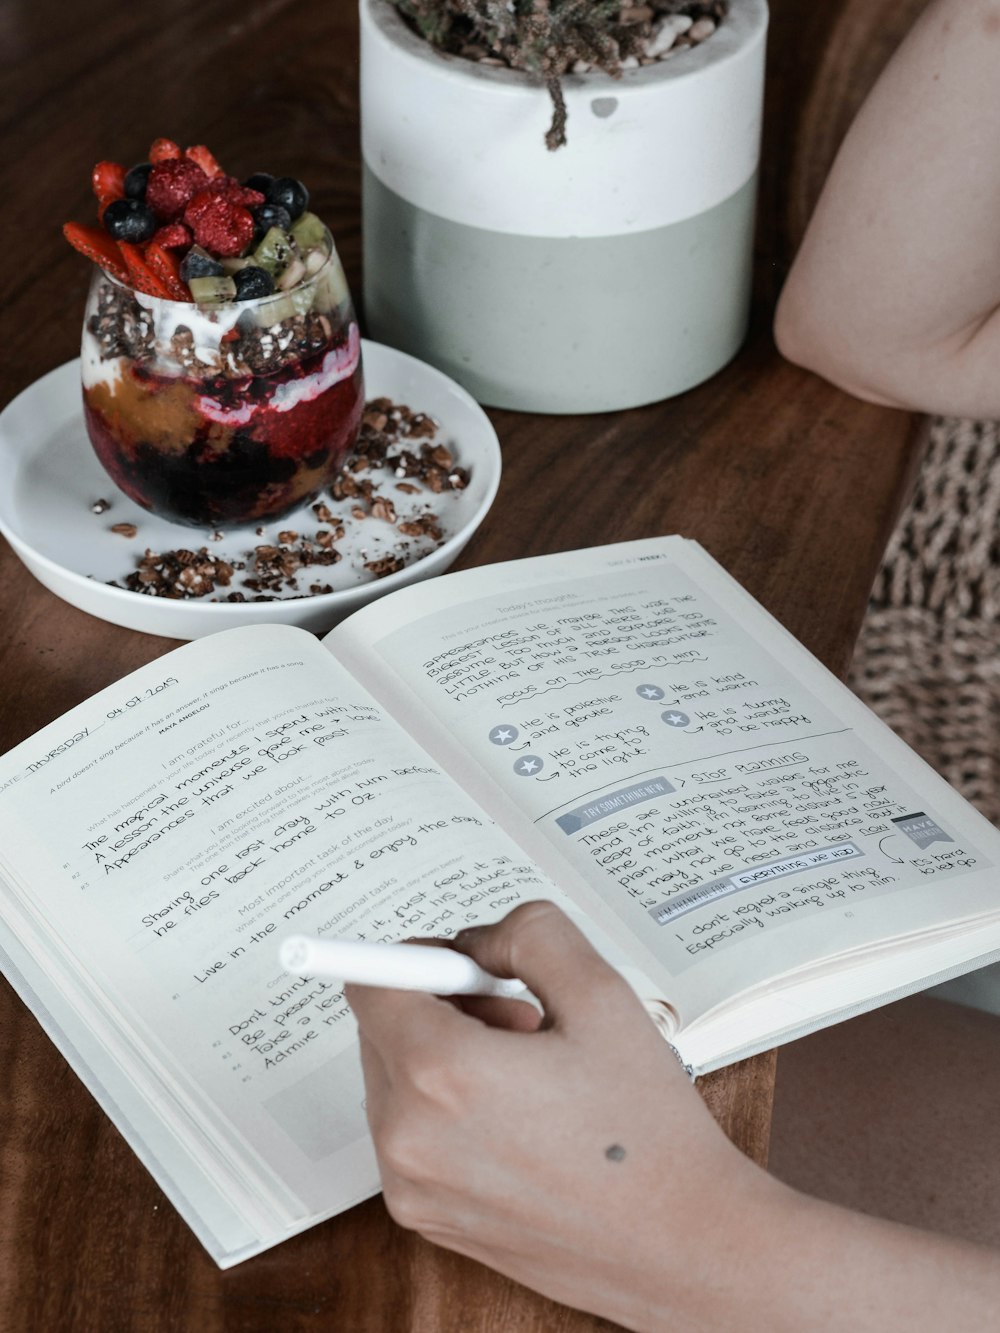 Eine Person liest ein Buch mit einem Dessert im Hintergrund